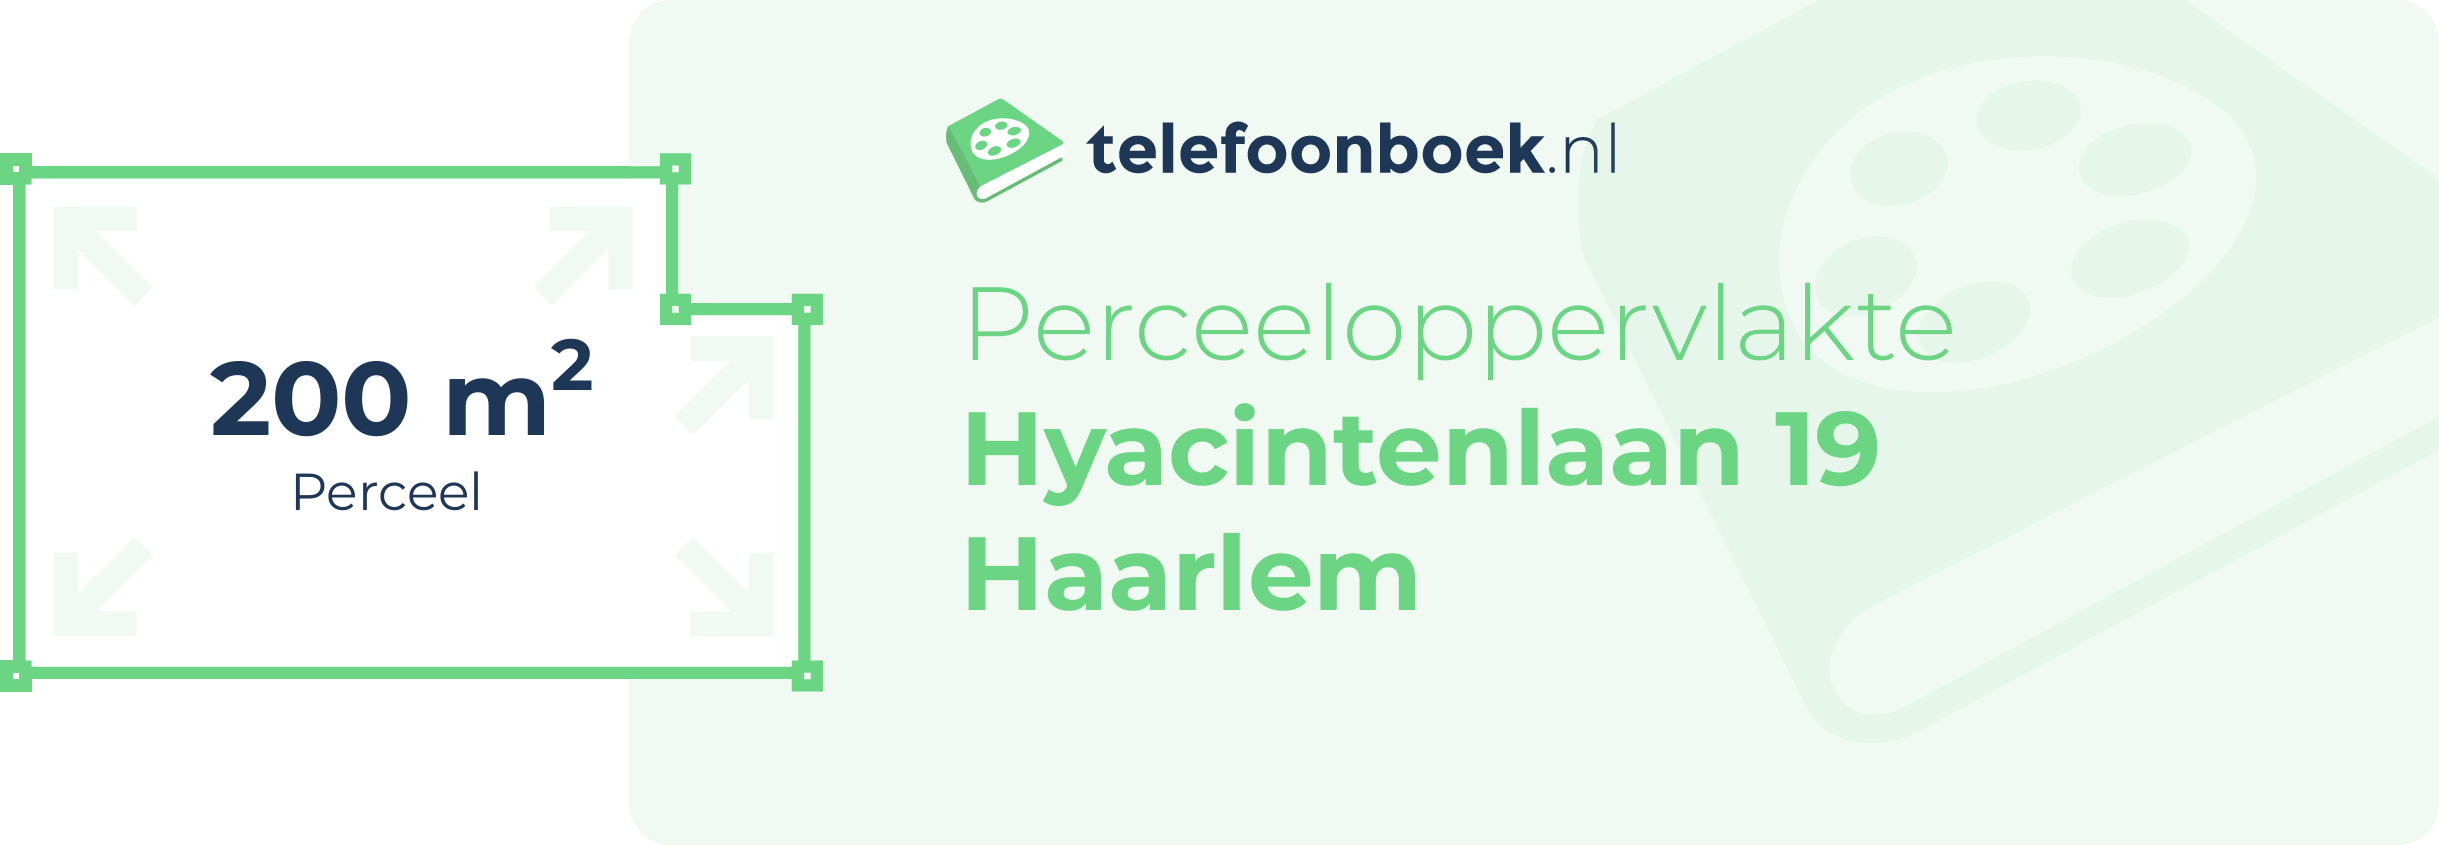 Perceeloppervlakte Hyacintenlaan 19 Haarlem